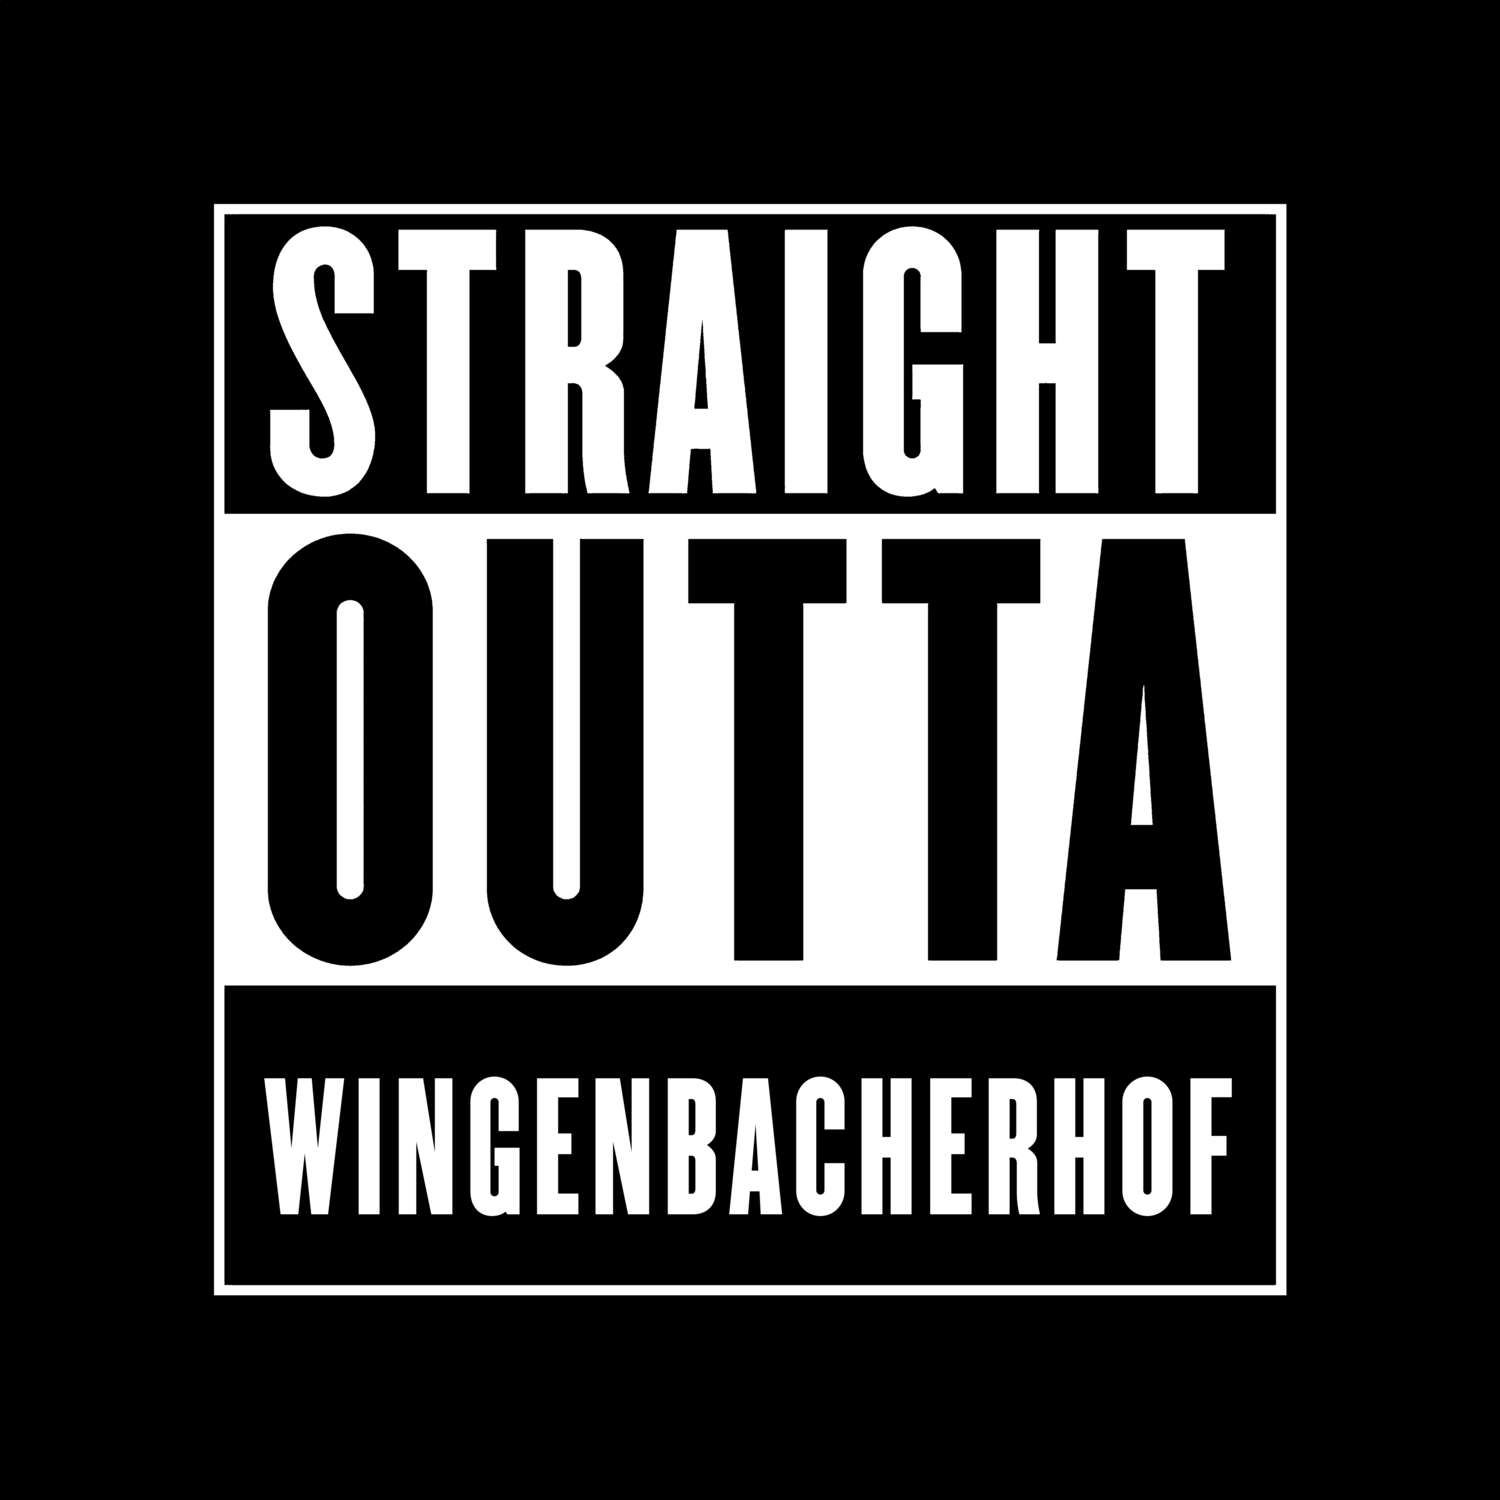 Wingenbacherhof T-Shirt »Straight Outta«